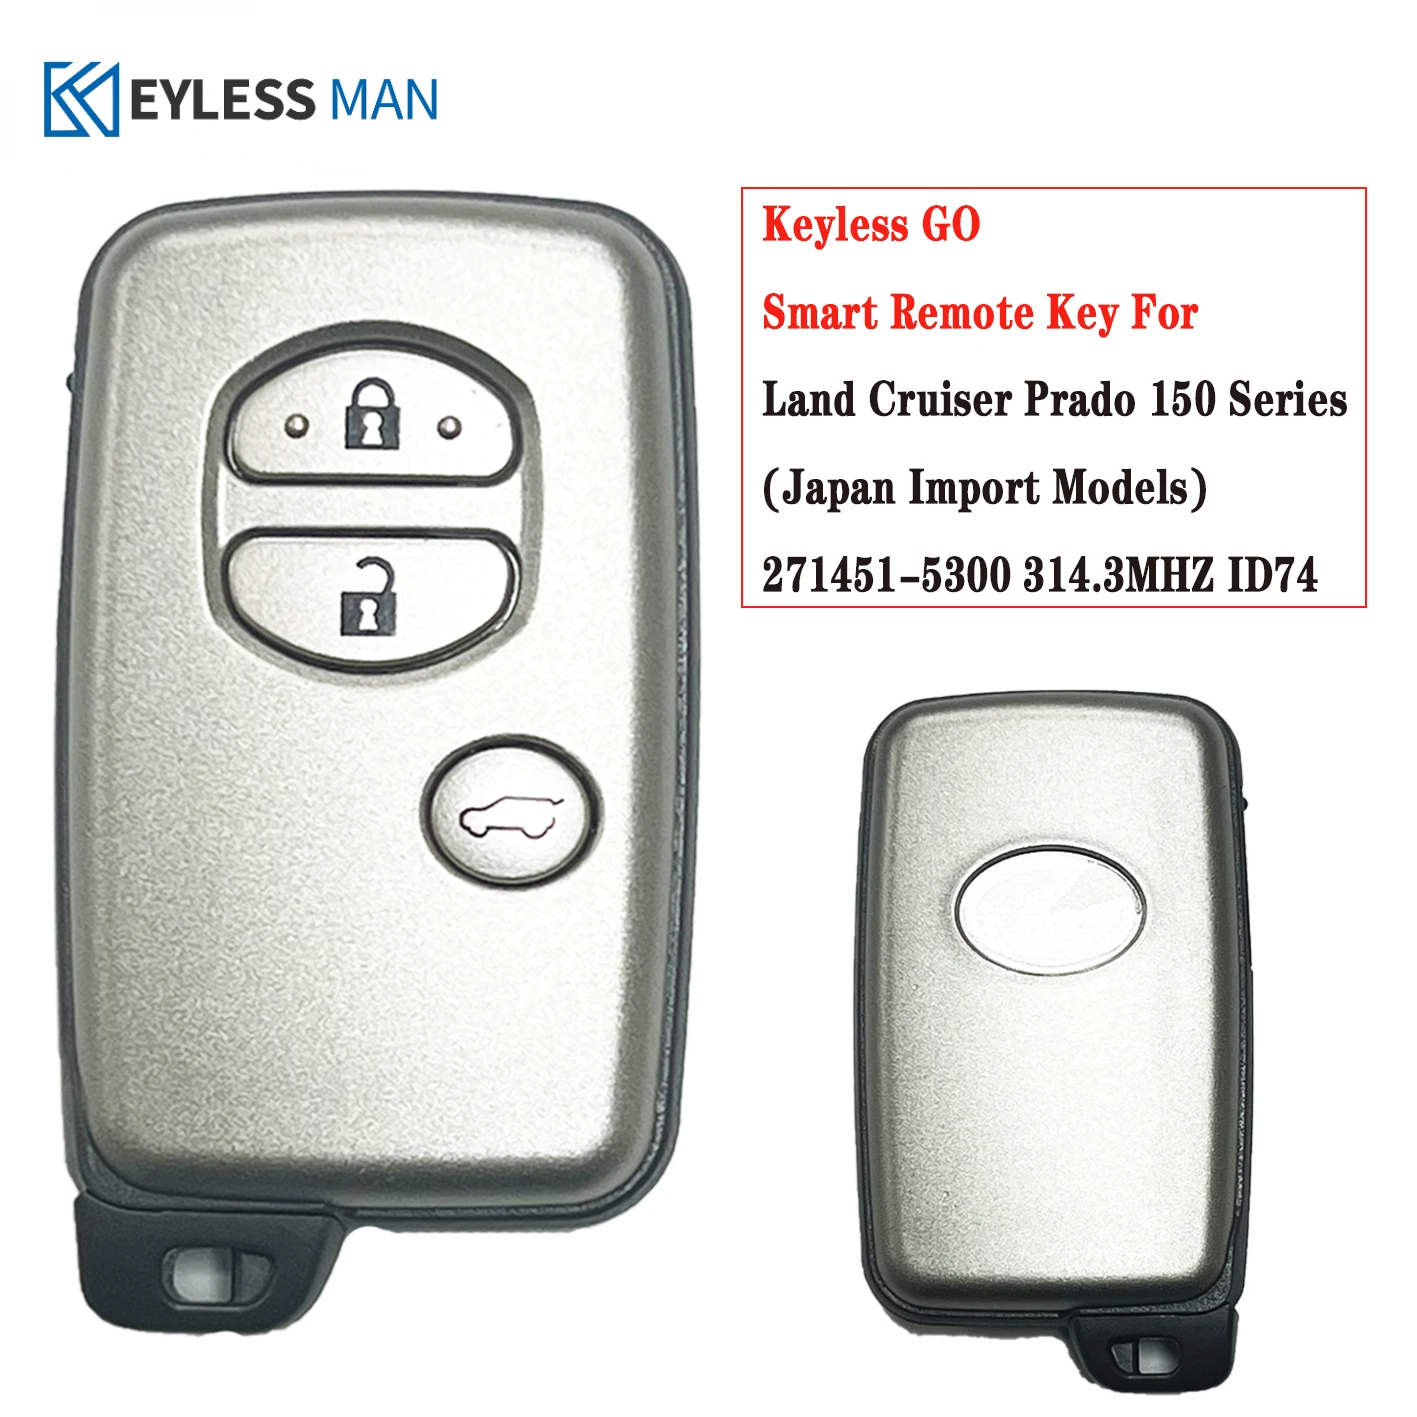 3Button Remote Car Key Fob For Toyota Land Cruiser Prado 150 2007-2013 LC150 Key 312MHZ 314.3MHZ ID74 Chip Board:271451-5300